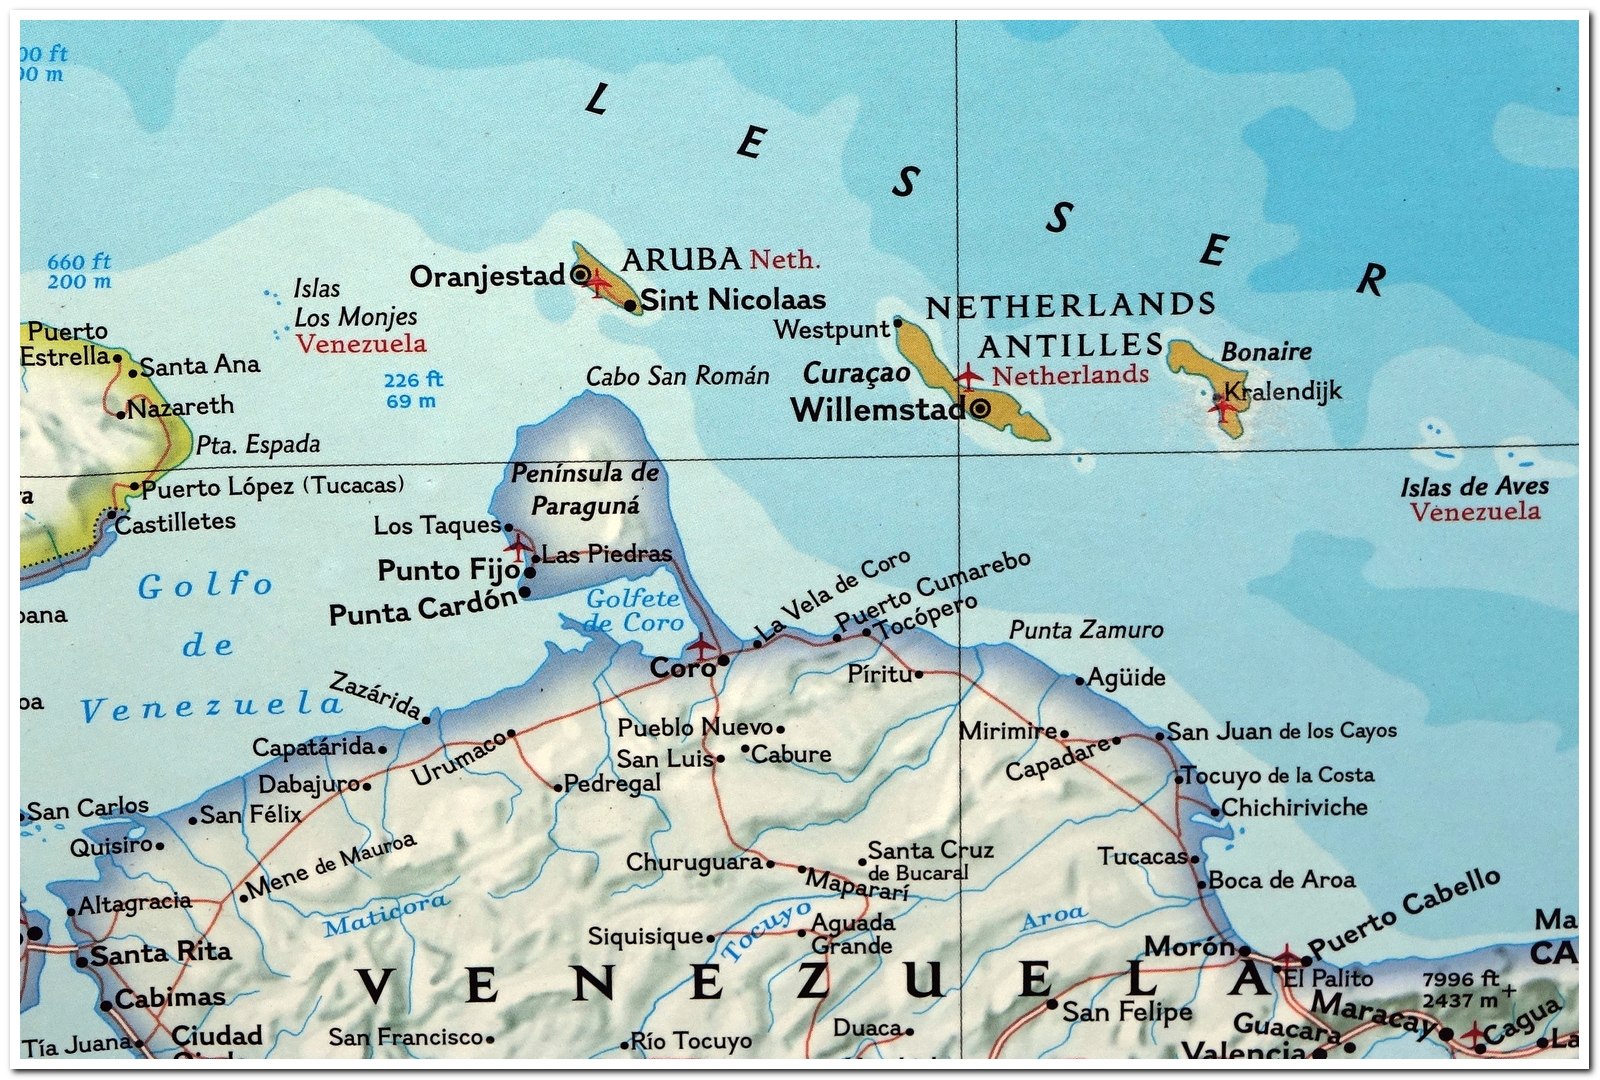 Karte von Bonaire